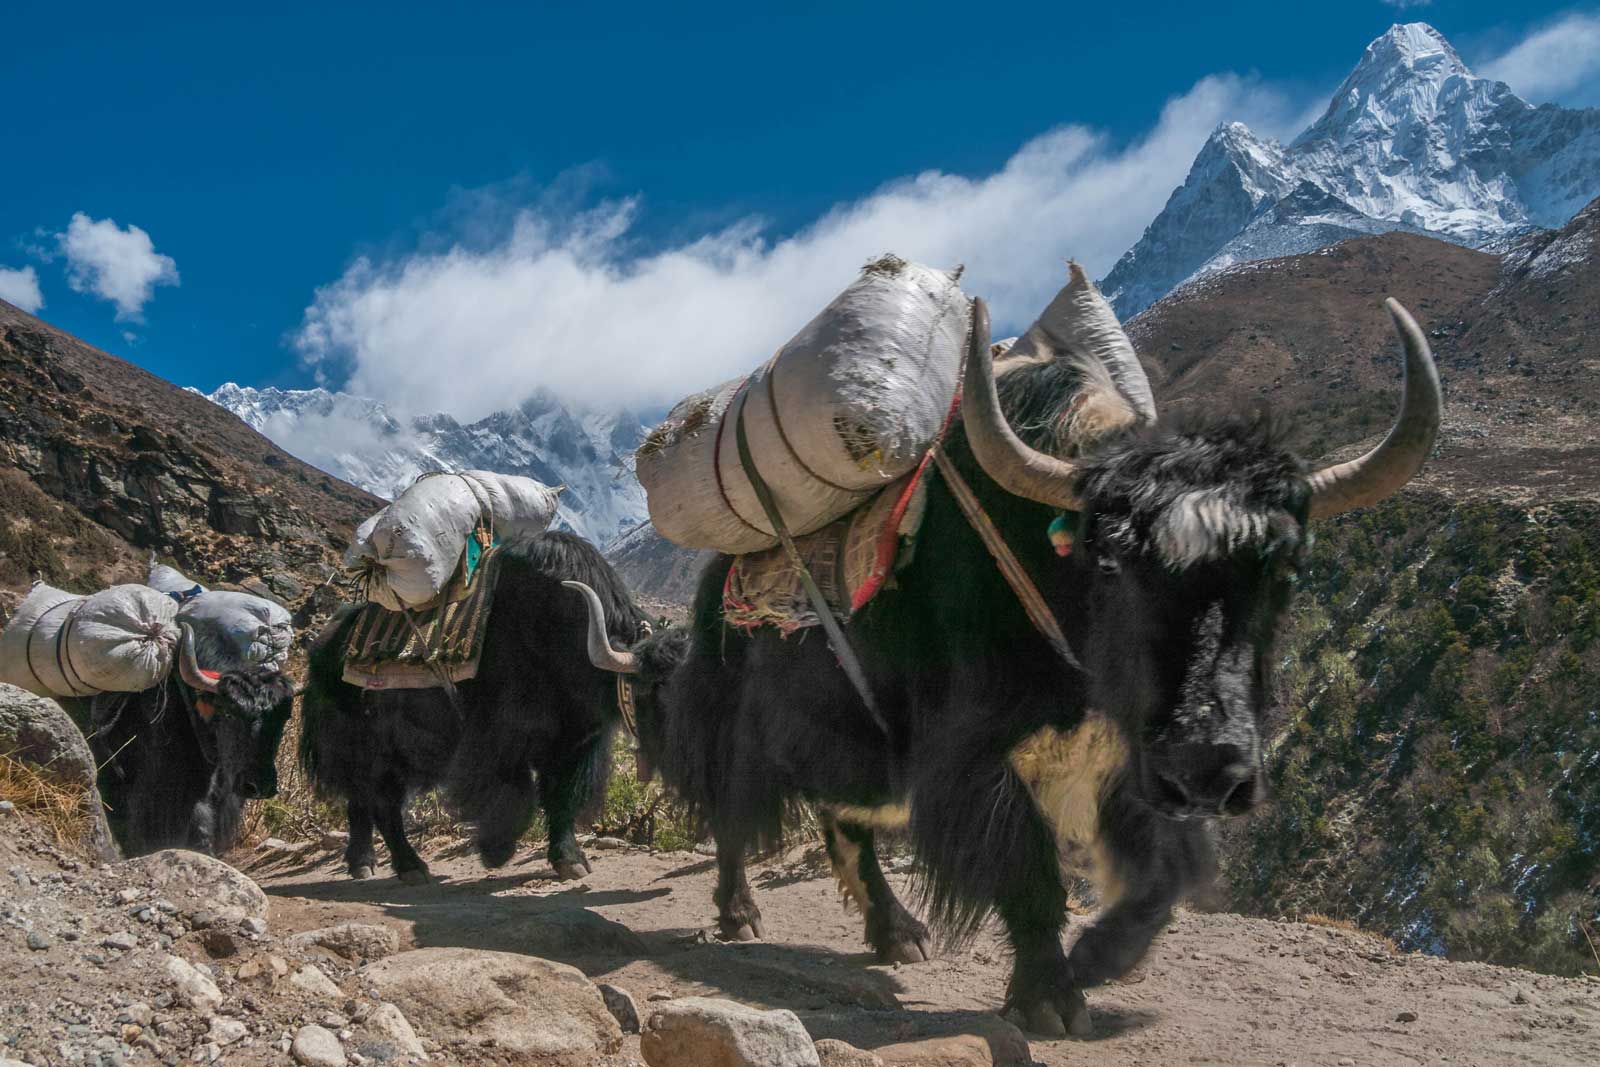 trekking tips yaks on mountain trails